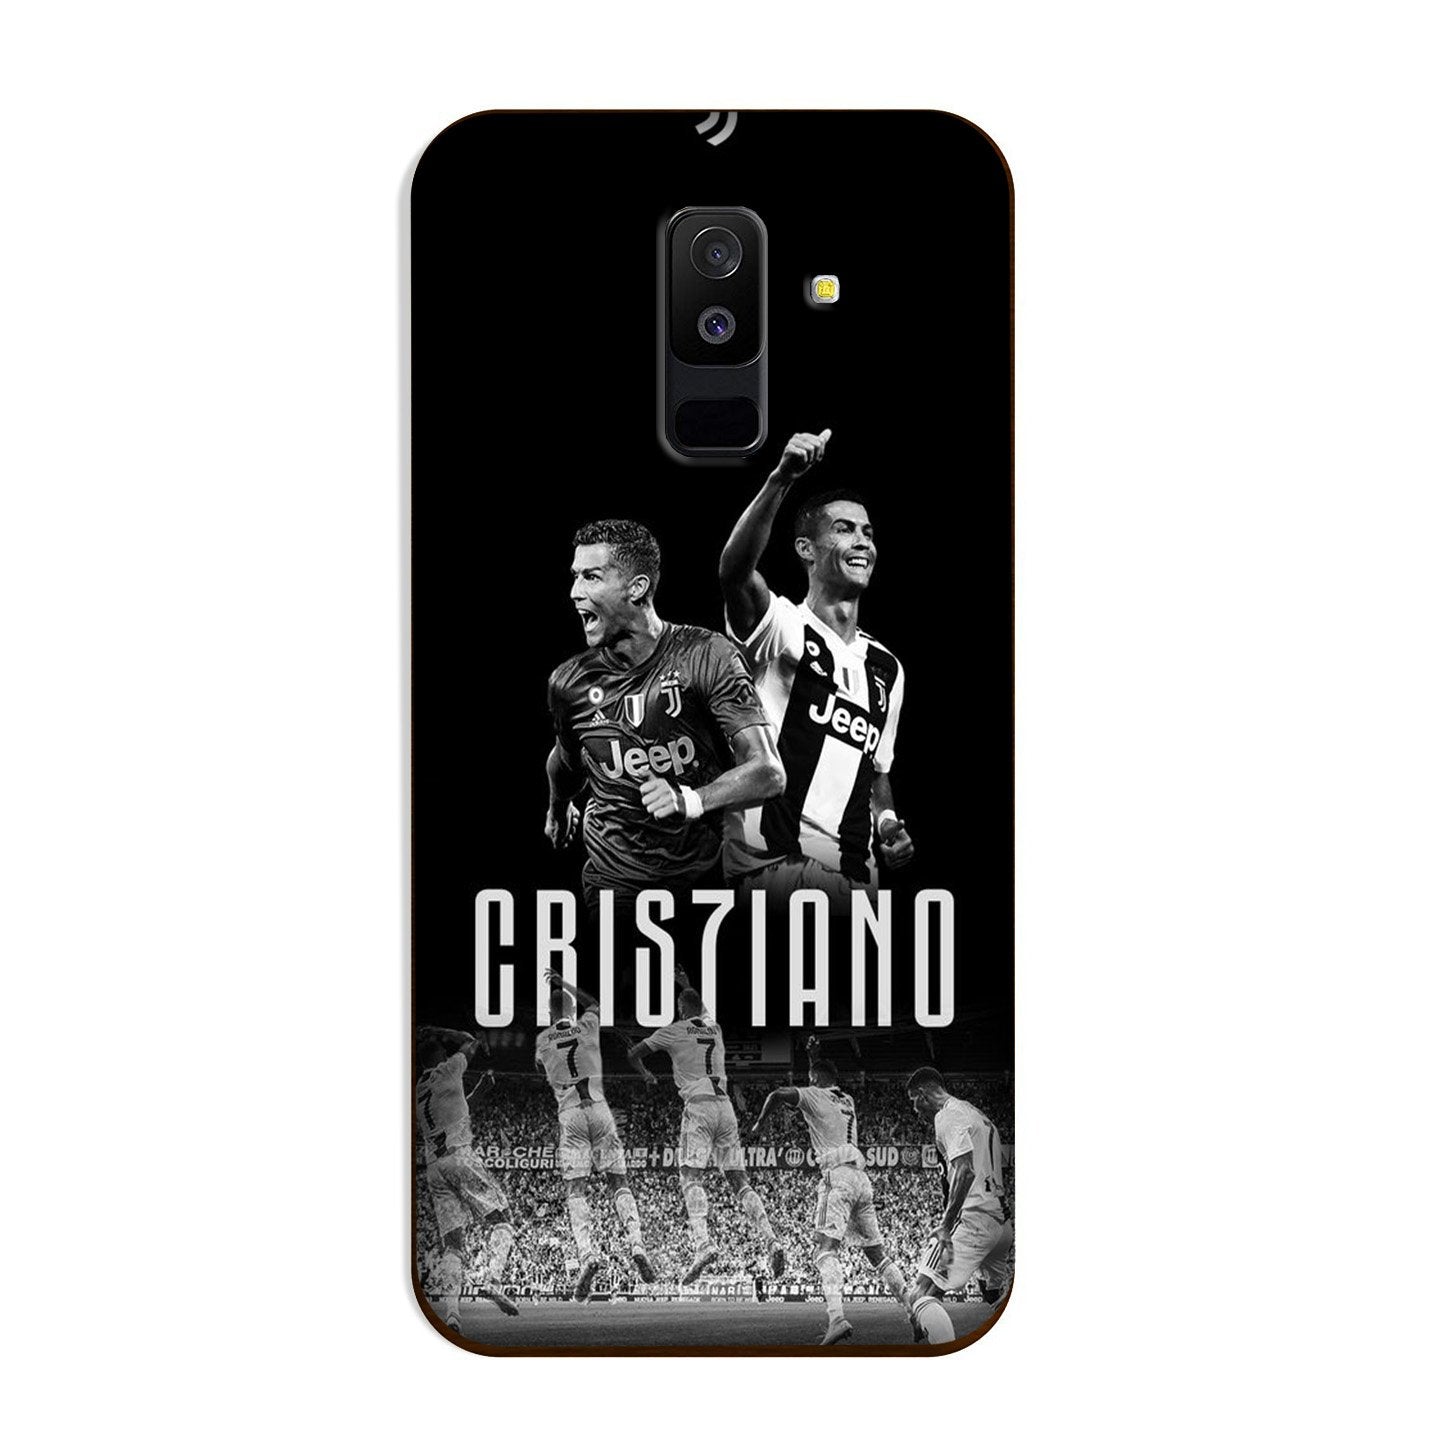 Cristiano Case for Galaxy A6 Plus(Design - 165)